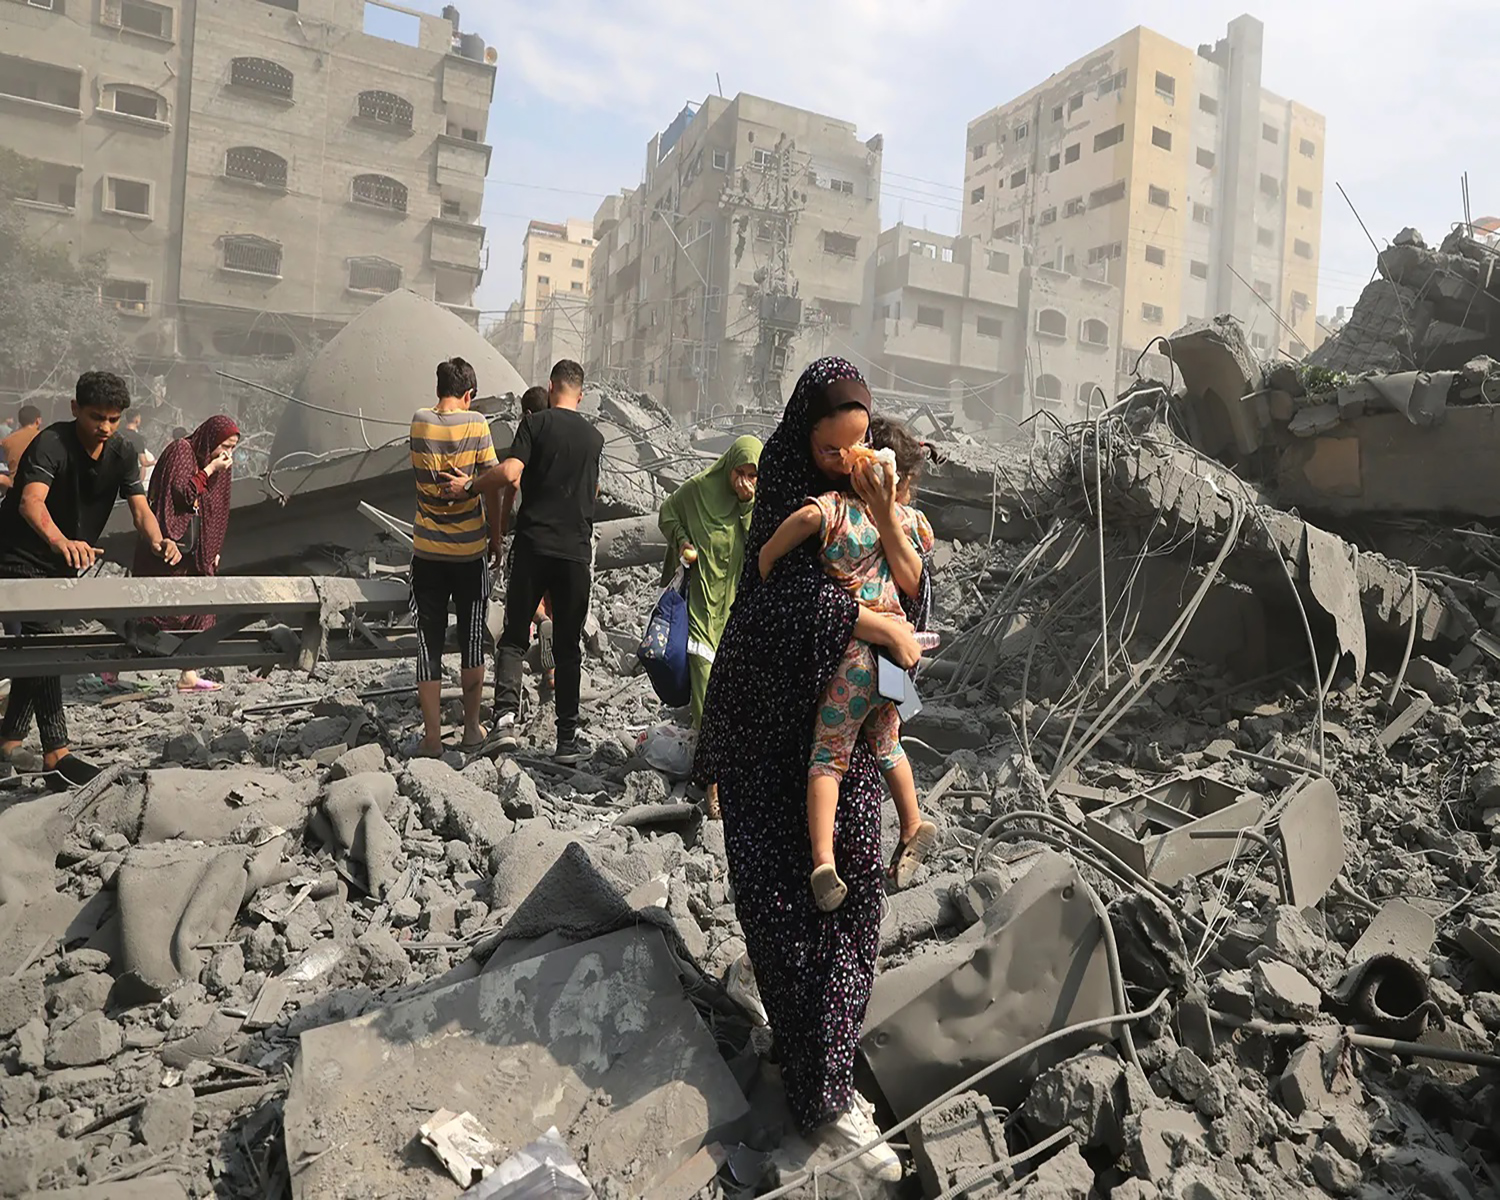 Le Secrétaire Général Appelle à Mettre un Terme aux Atrocités contre la Population de Gaza  